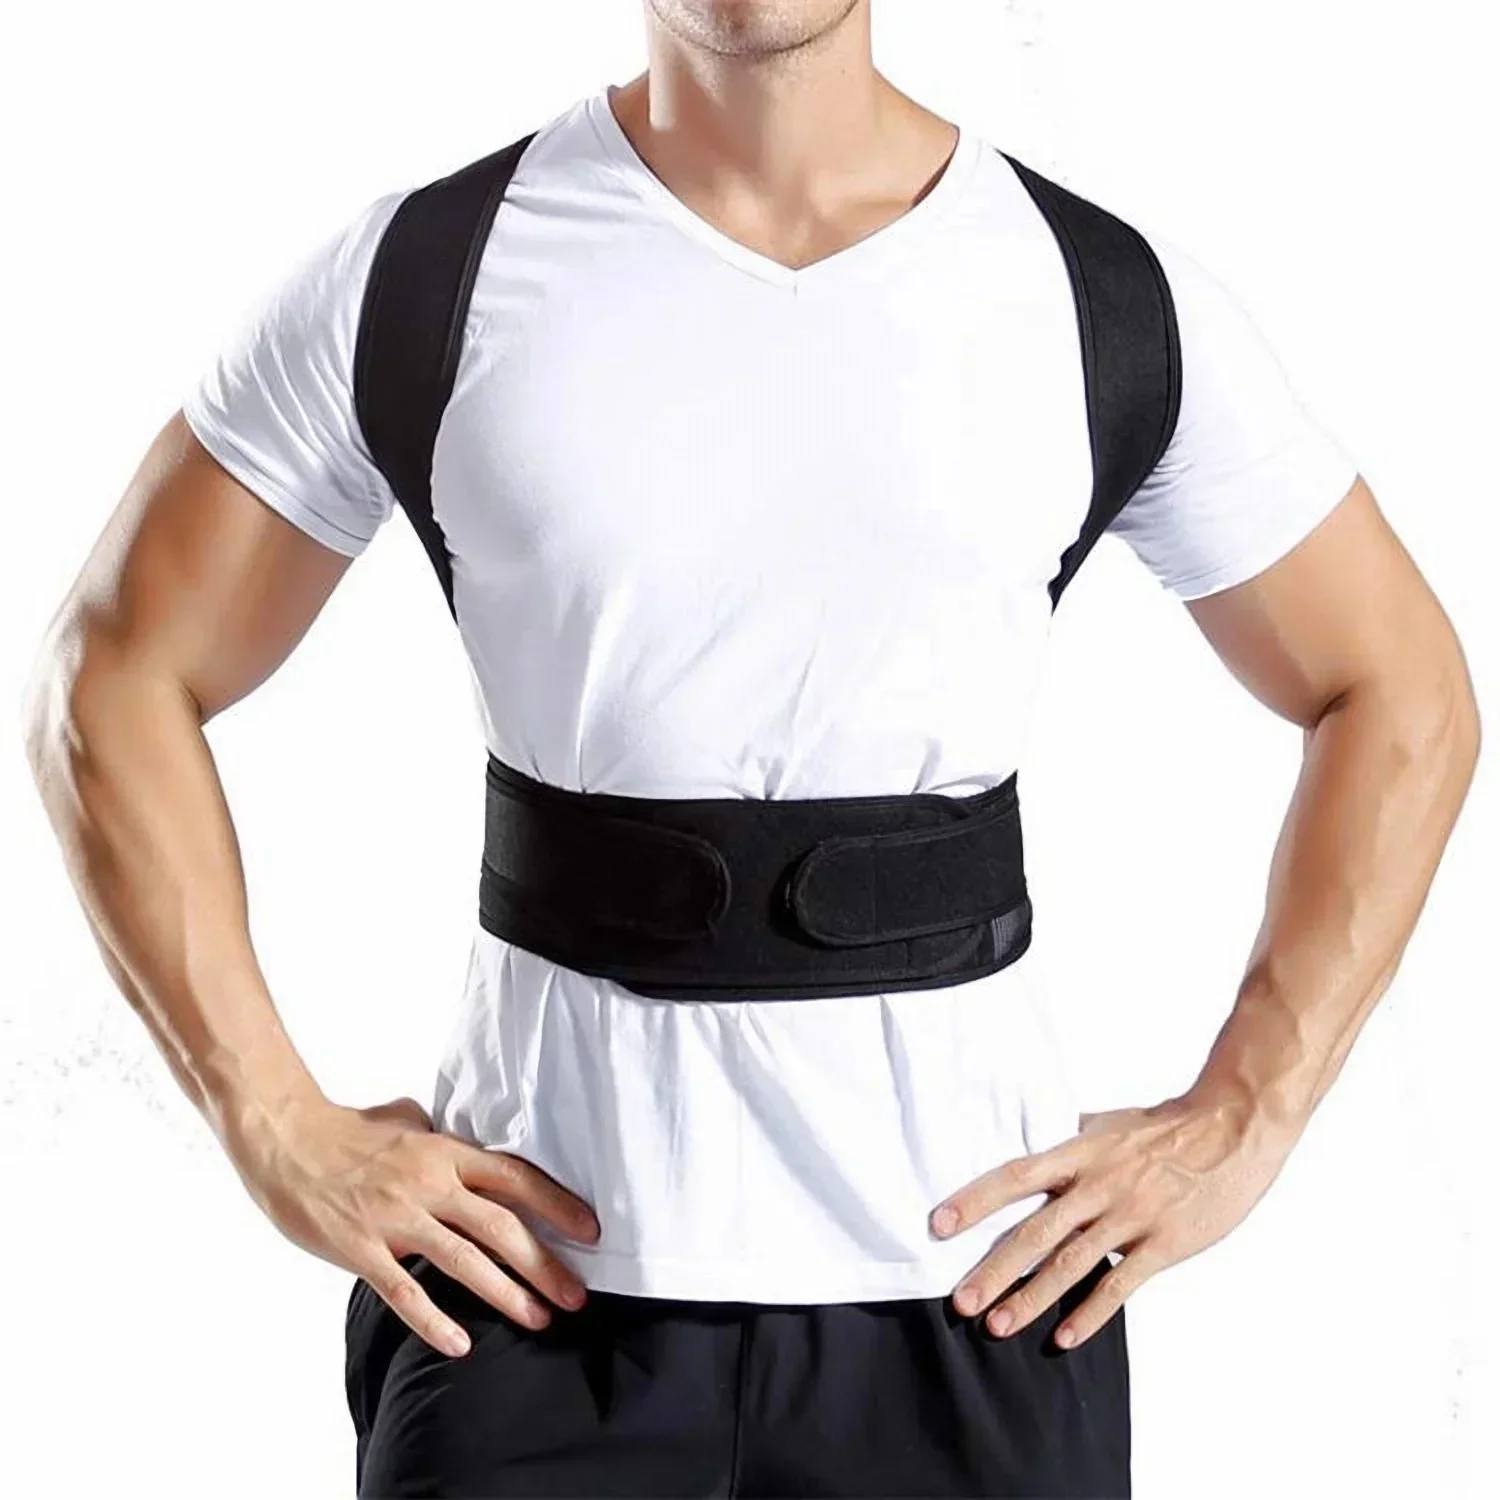 Упражнение, облегчающее боль, корсетный ремень для спины, спортивный бандаж Для поддержки мужской осанки, Поясничный корректор, тренировка плечевой колонки